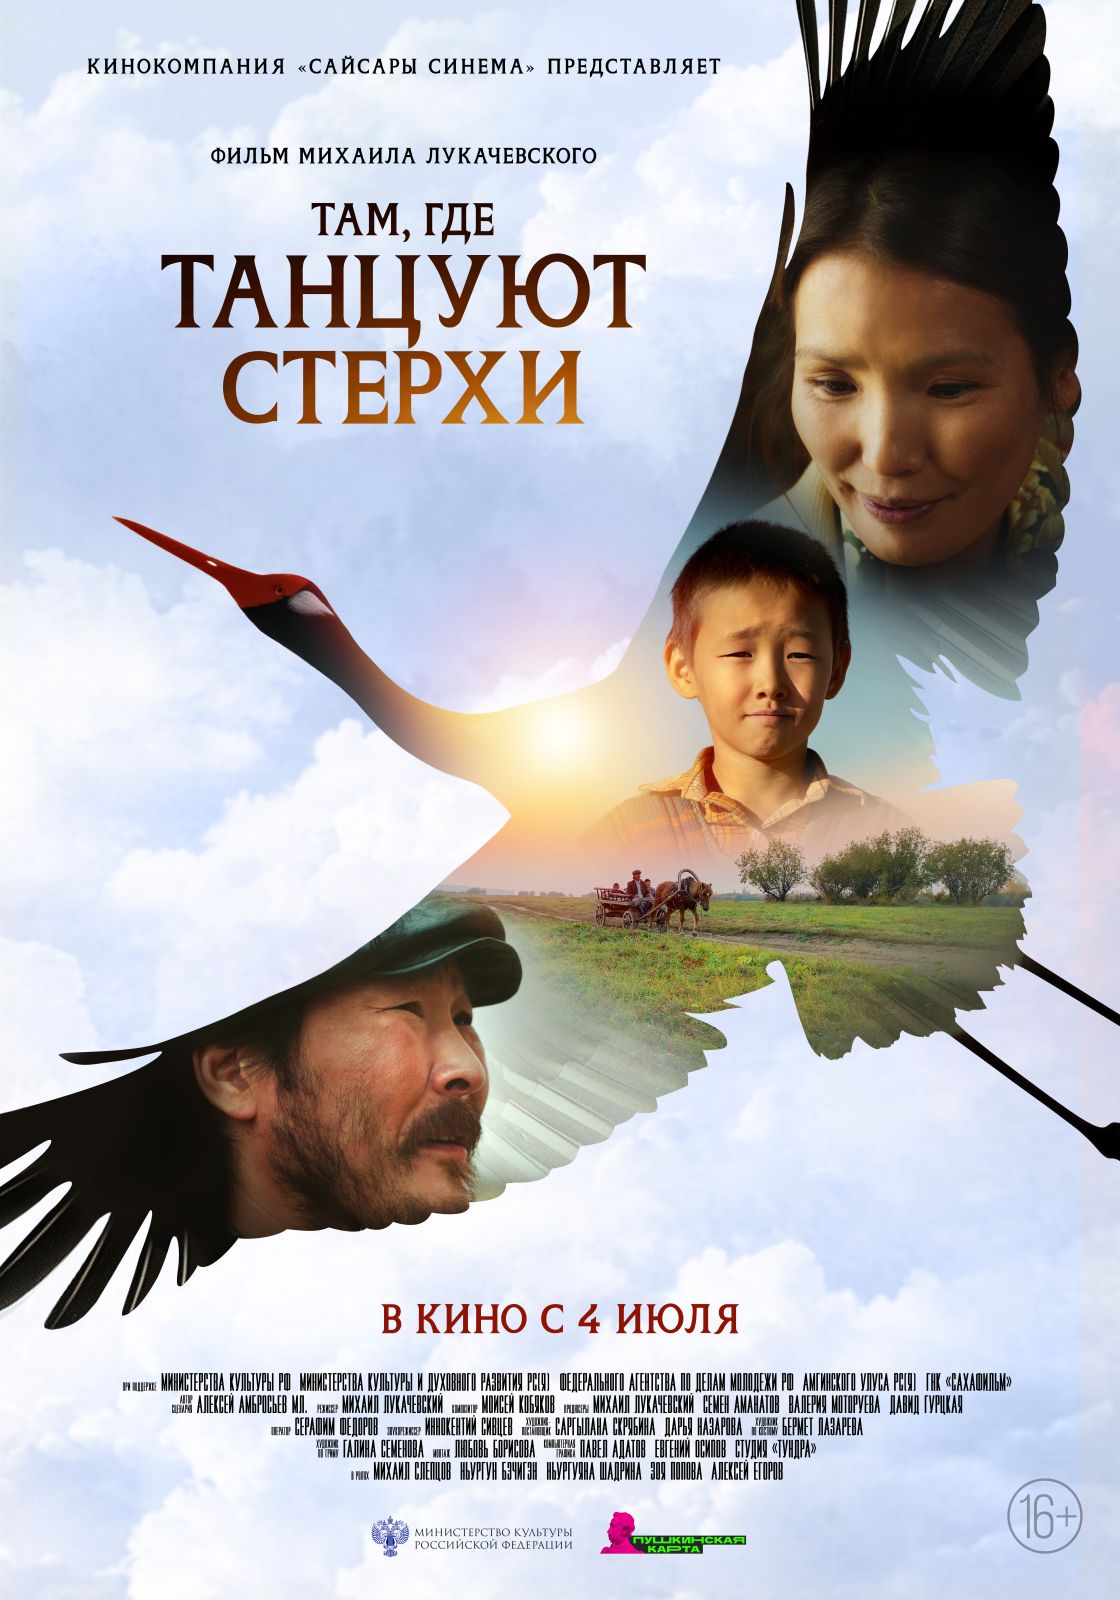 «Ты ведь никогда в жизни не сможешь ходить!»: опубликован трейлер якутской сказки «Там, где танцуют стерхи»